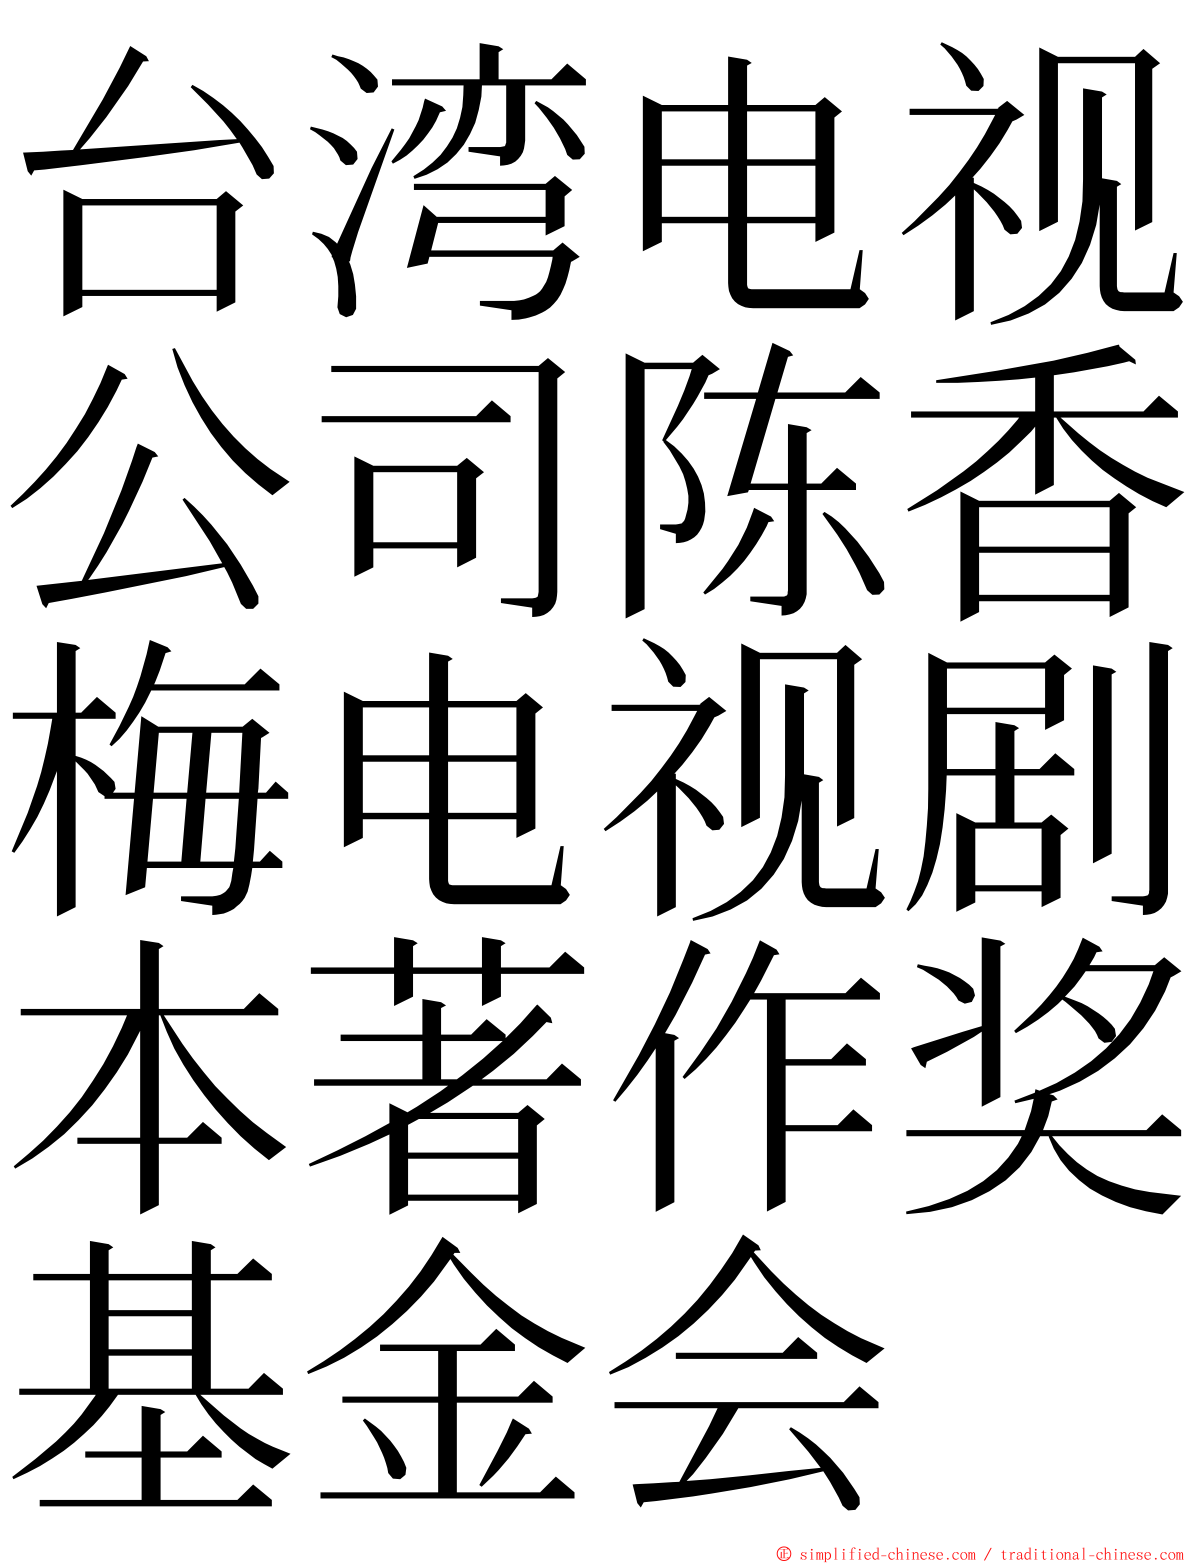 台湾电视公司陈香梅电视剧本著作奖基金会 ming font